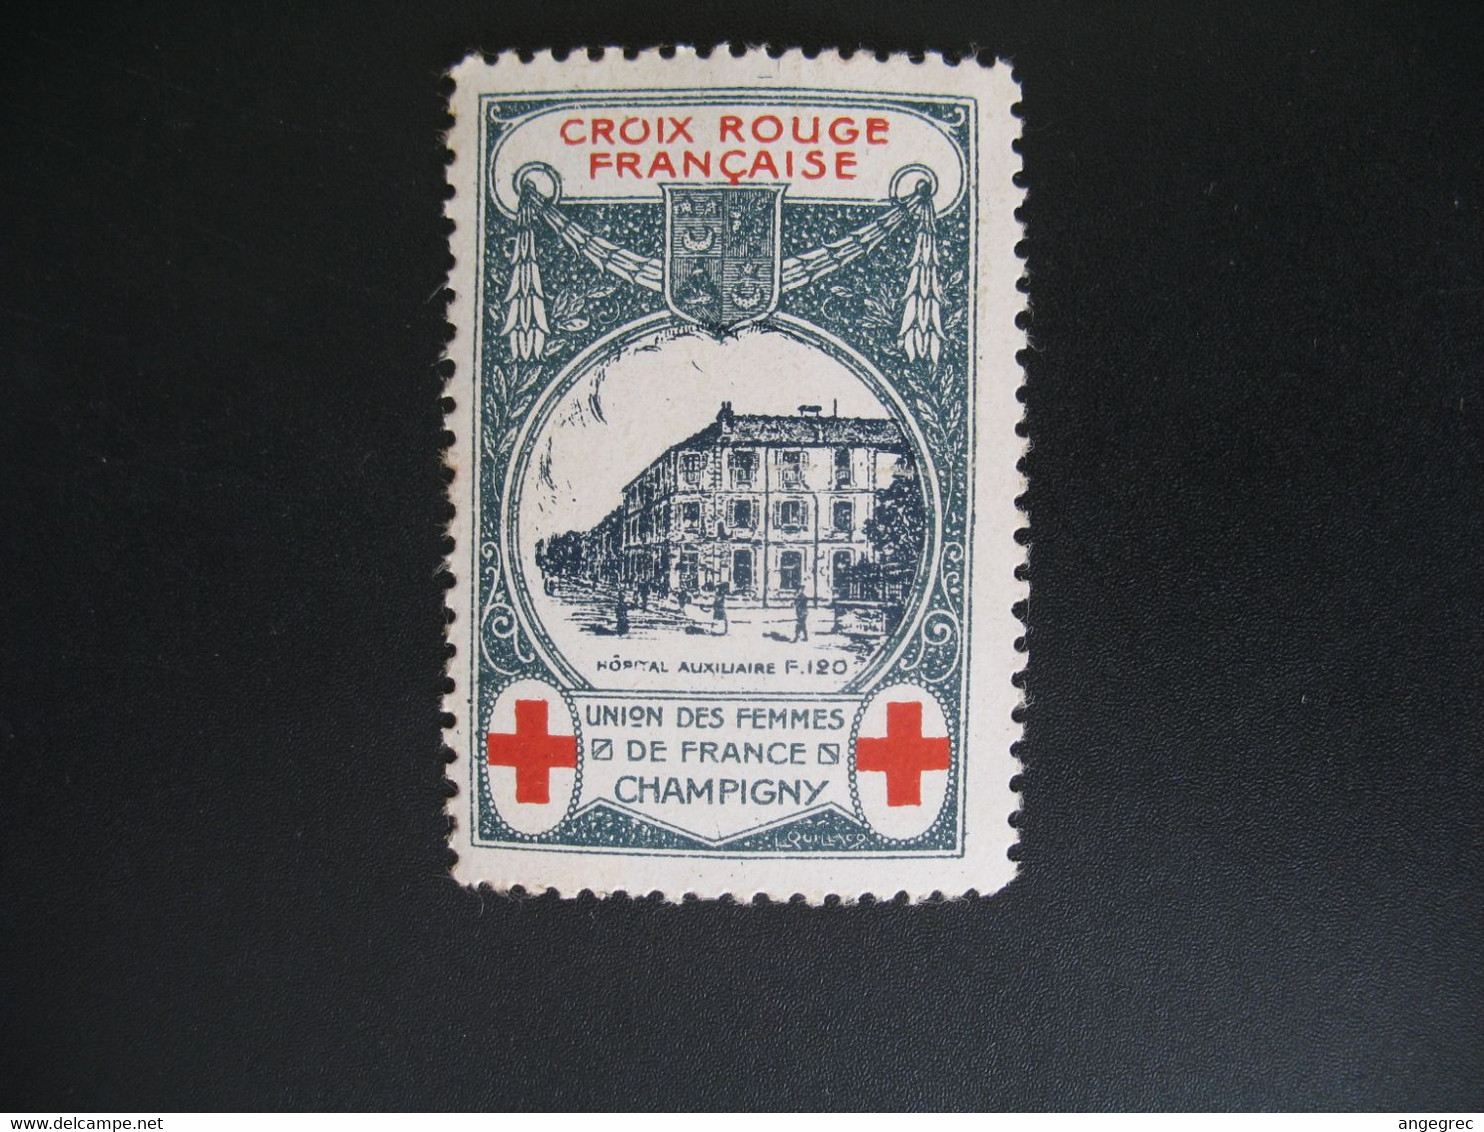 Vignette Militaire Delandre Guerre De 1914 - Croix Rouge - Red Cross -   Neuf ** Champigny Union Des Femmes  De France - Rotes Kreuz